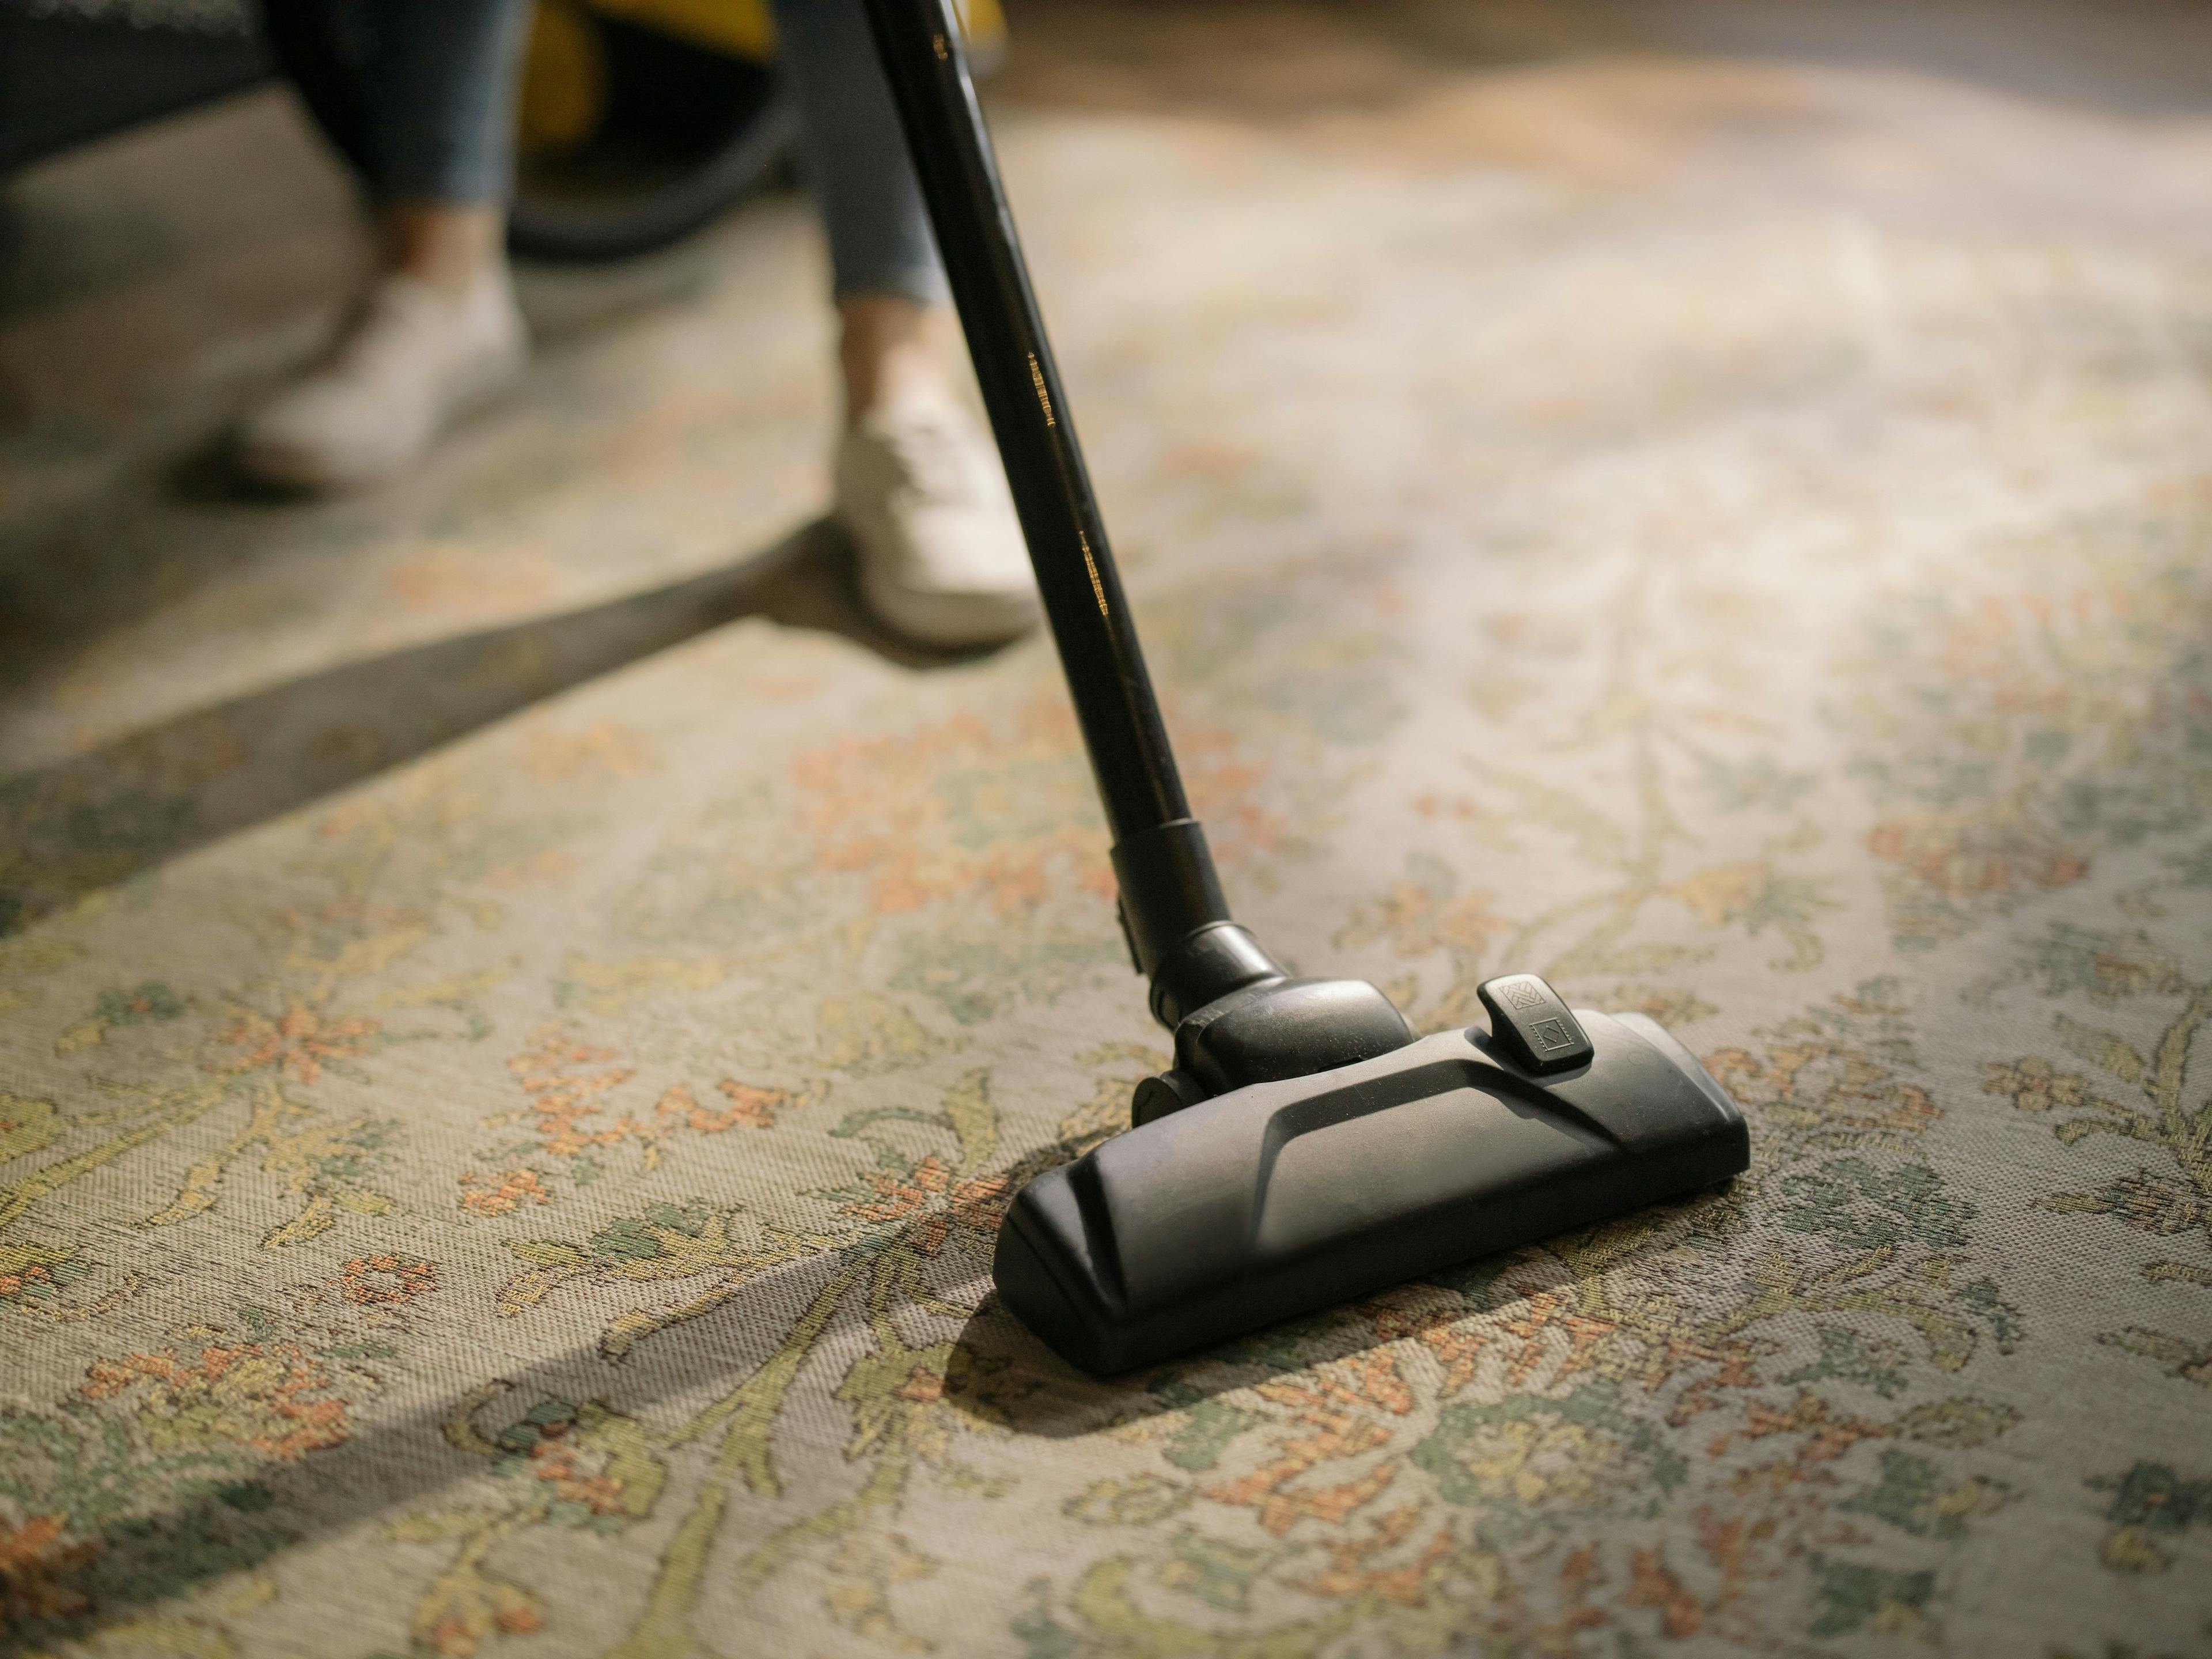 Teppich Selbst Reinigen Um Ihnen die Arbeit zu erleichtern, wir haben Tipps und Tricks zusammengestellt, mit denen Sie Ihren teppich reinigen hausmittel